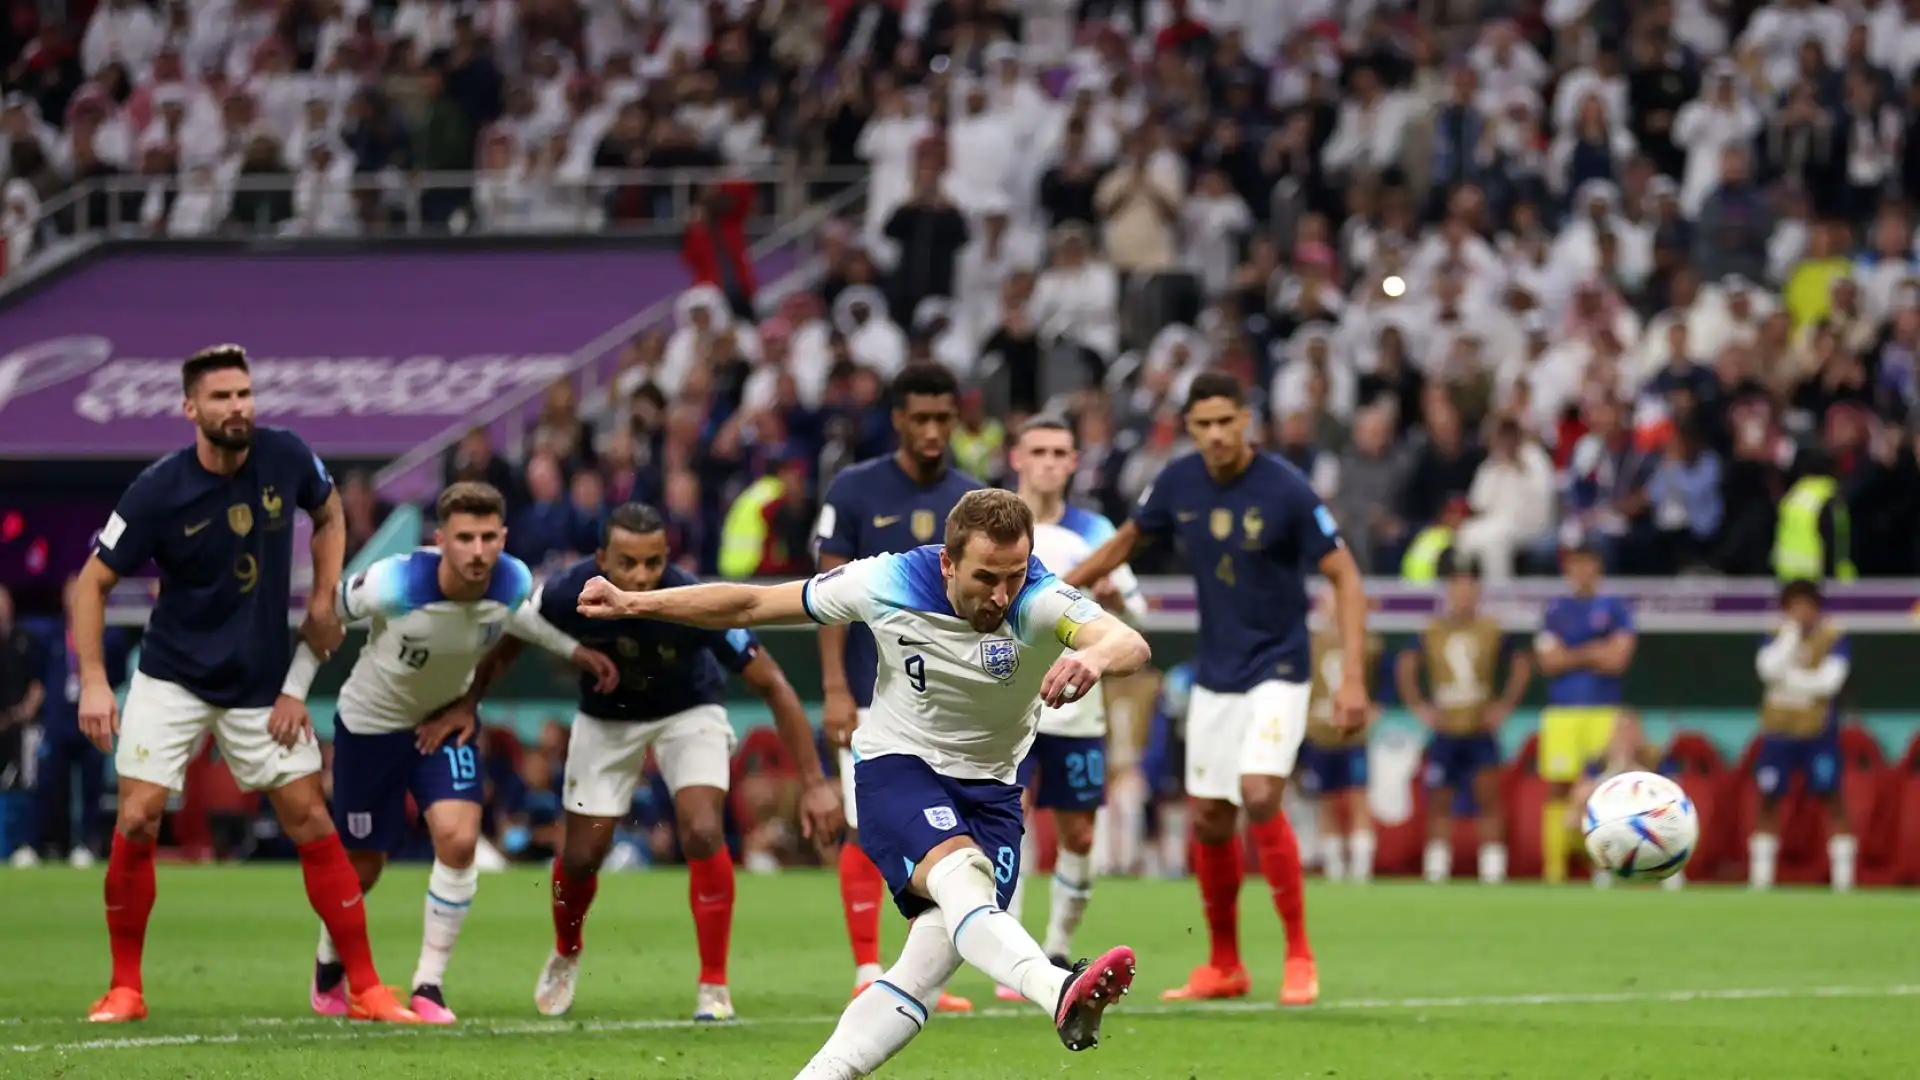 Inghilterra-Francia 2022: Kane sbaglia il rigore dopo averne realizzato uno nel primo tempo, inglesi fuori dai Mondiali